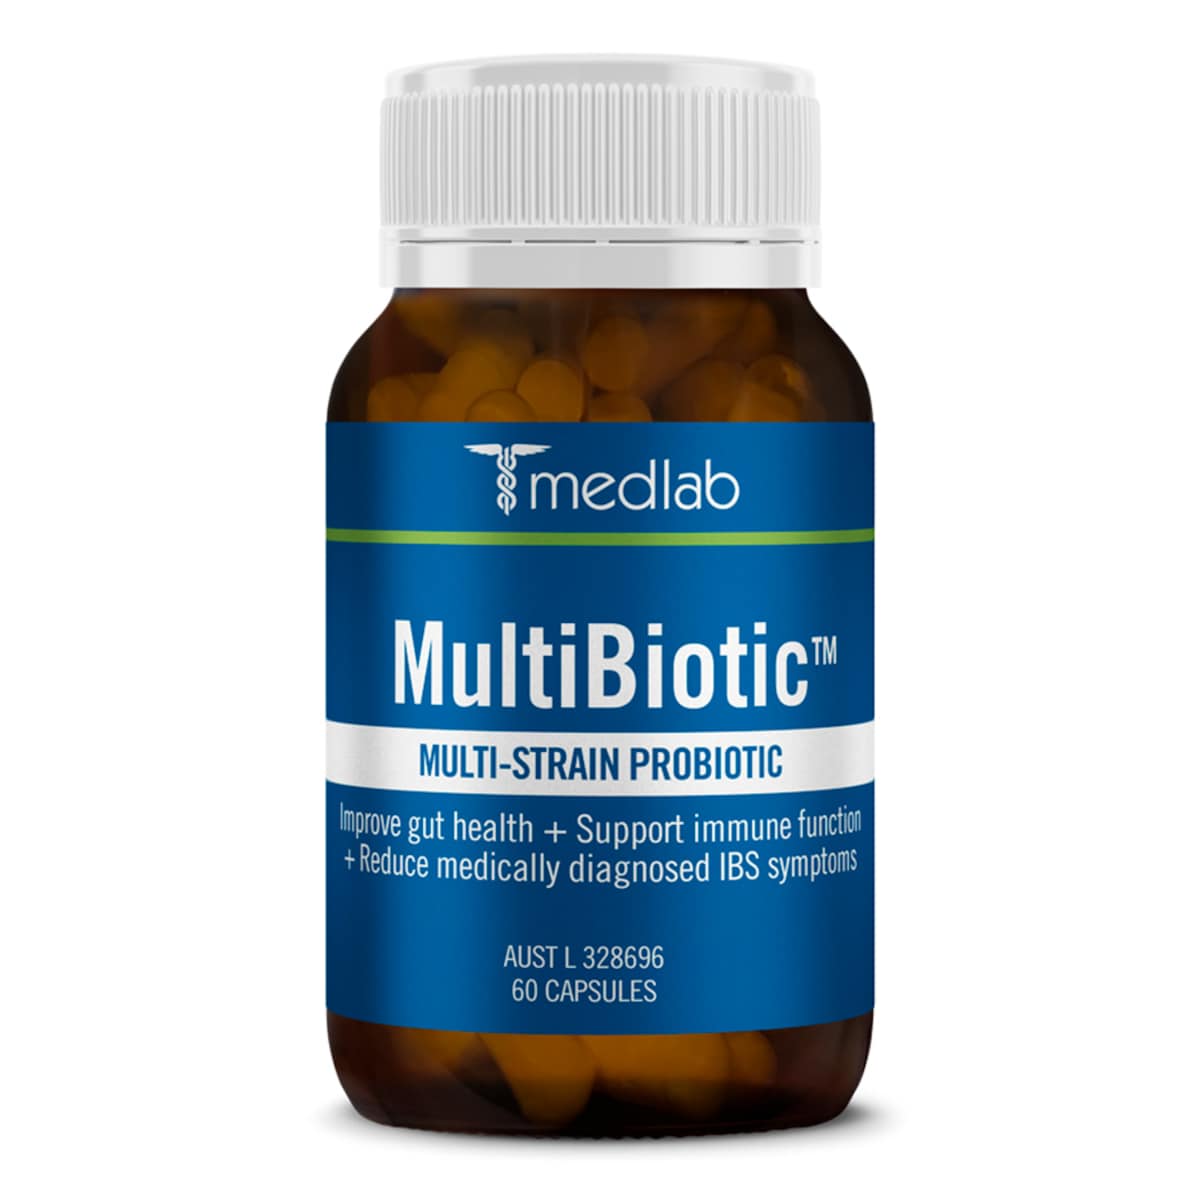 Medlab MultiBiotic Multi-Strain Probiotic 60 Capsules